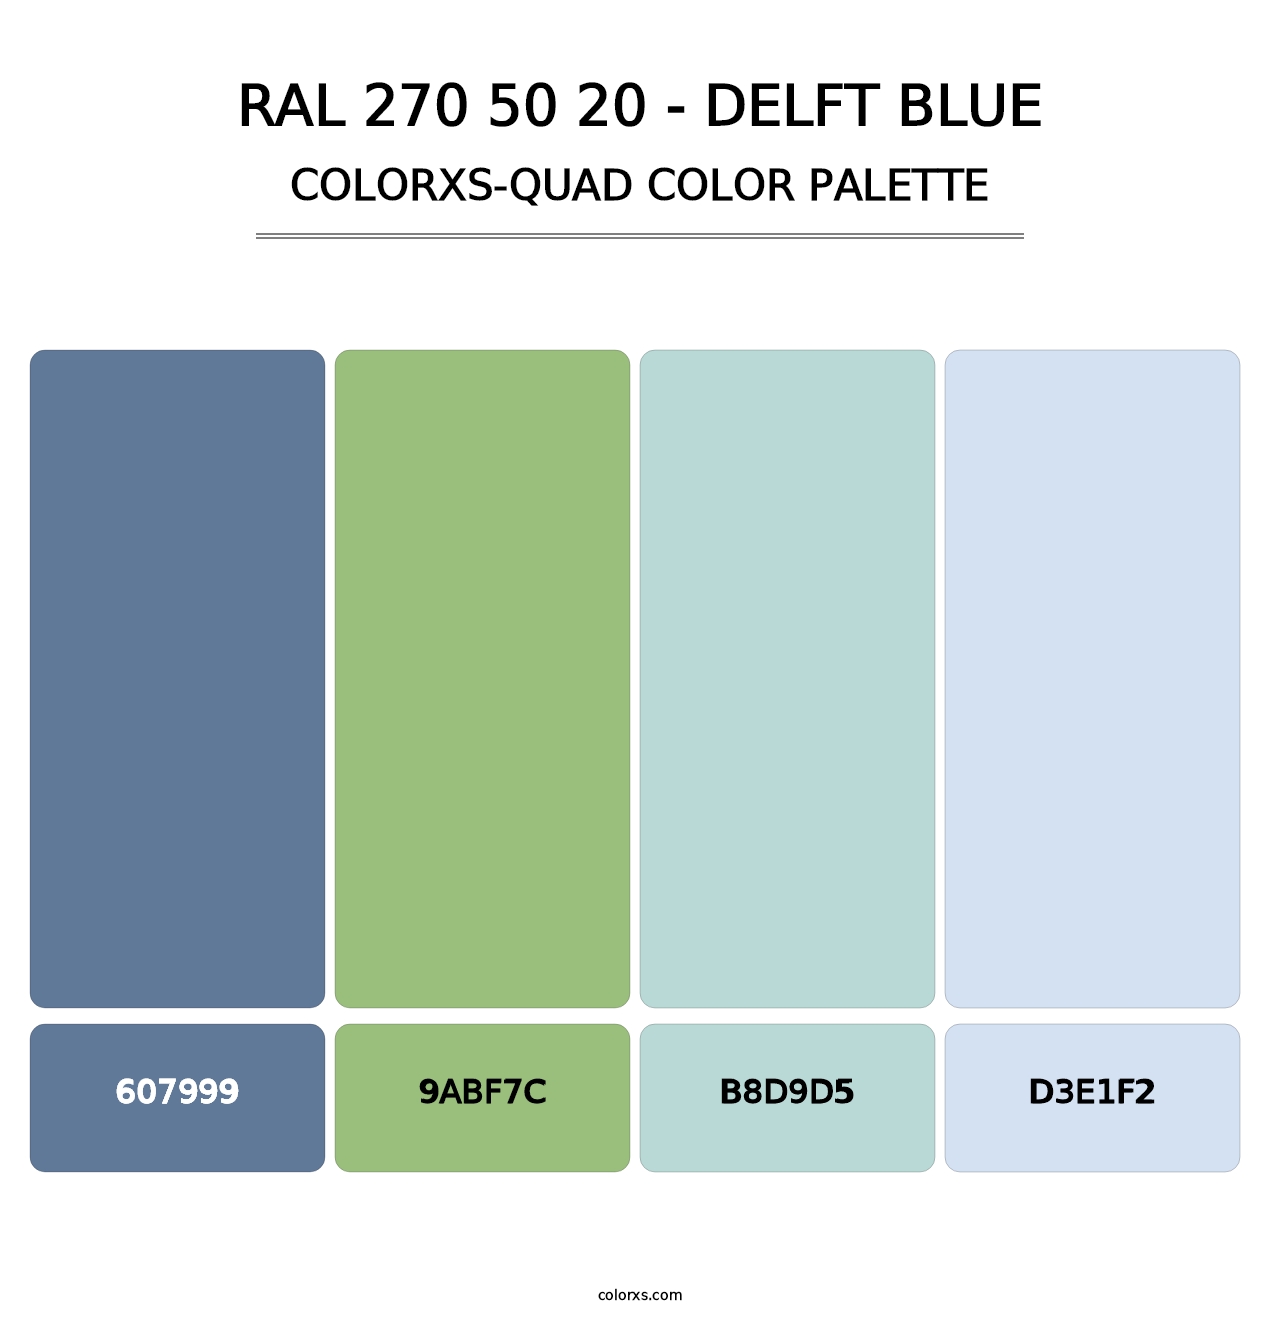 RAL 270 50 20 - Delft Blue - Colorxs Quad Palette